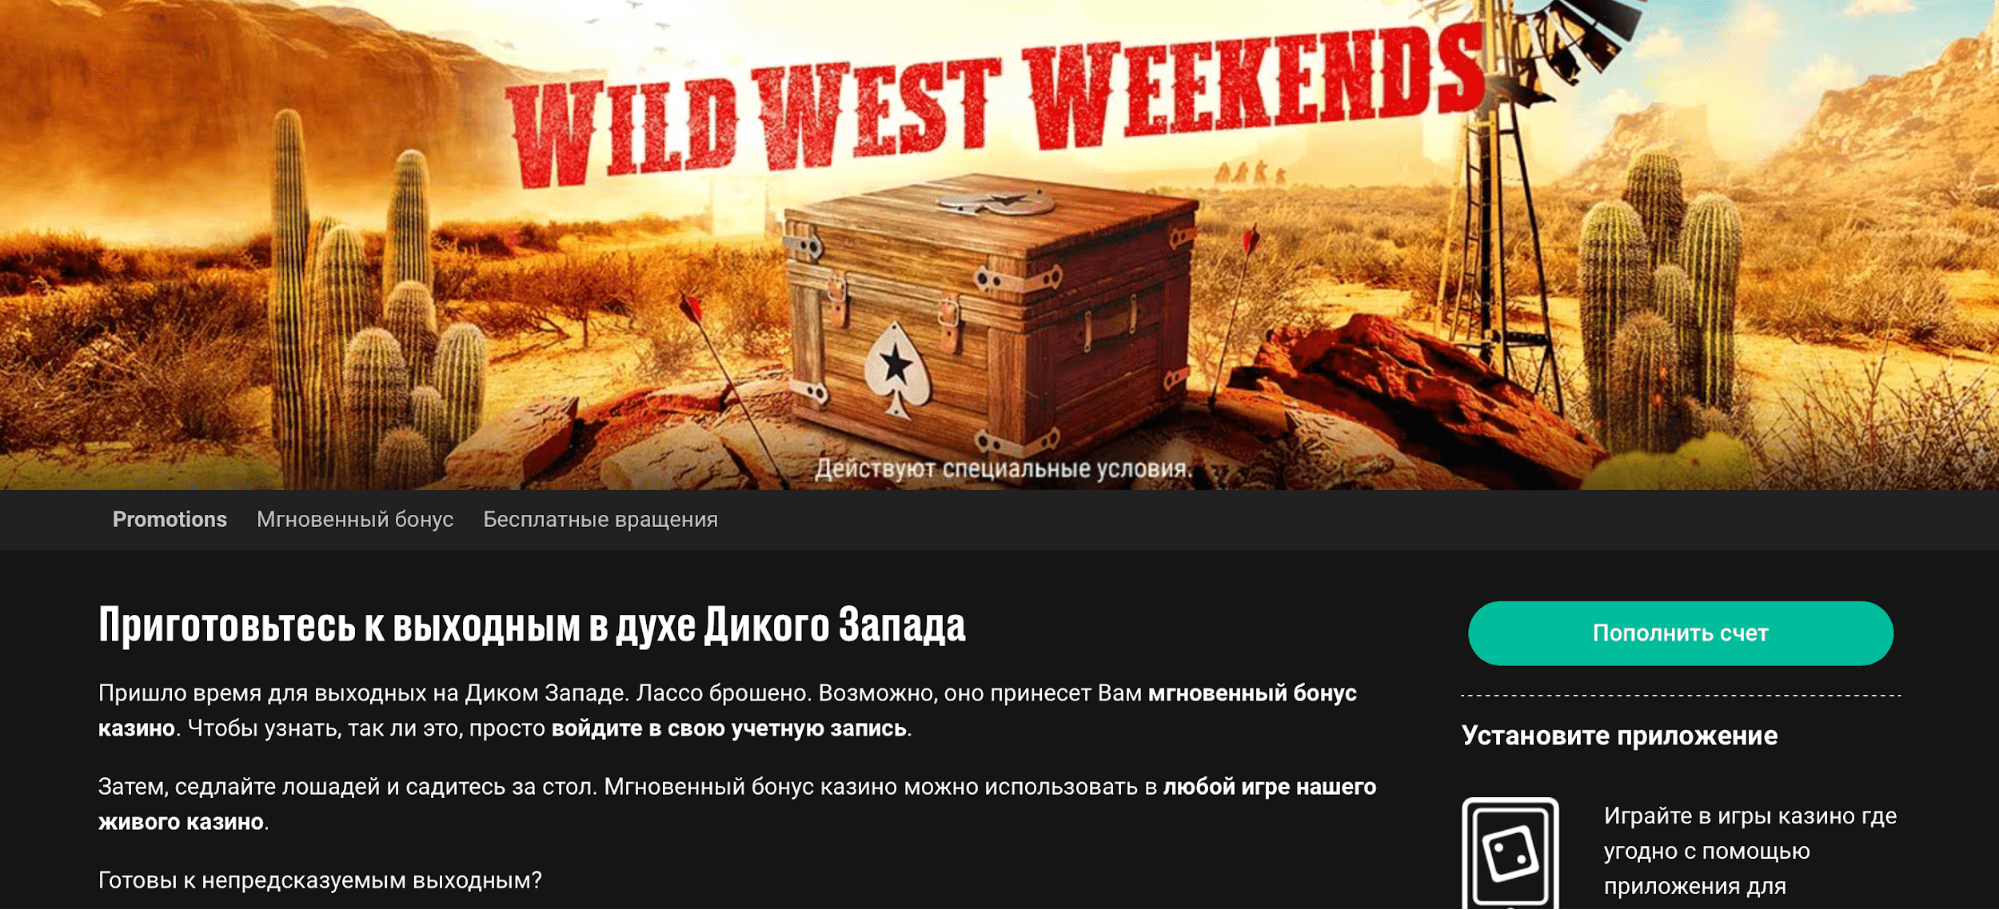 Условия Wild west weekends live casino